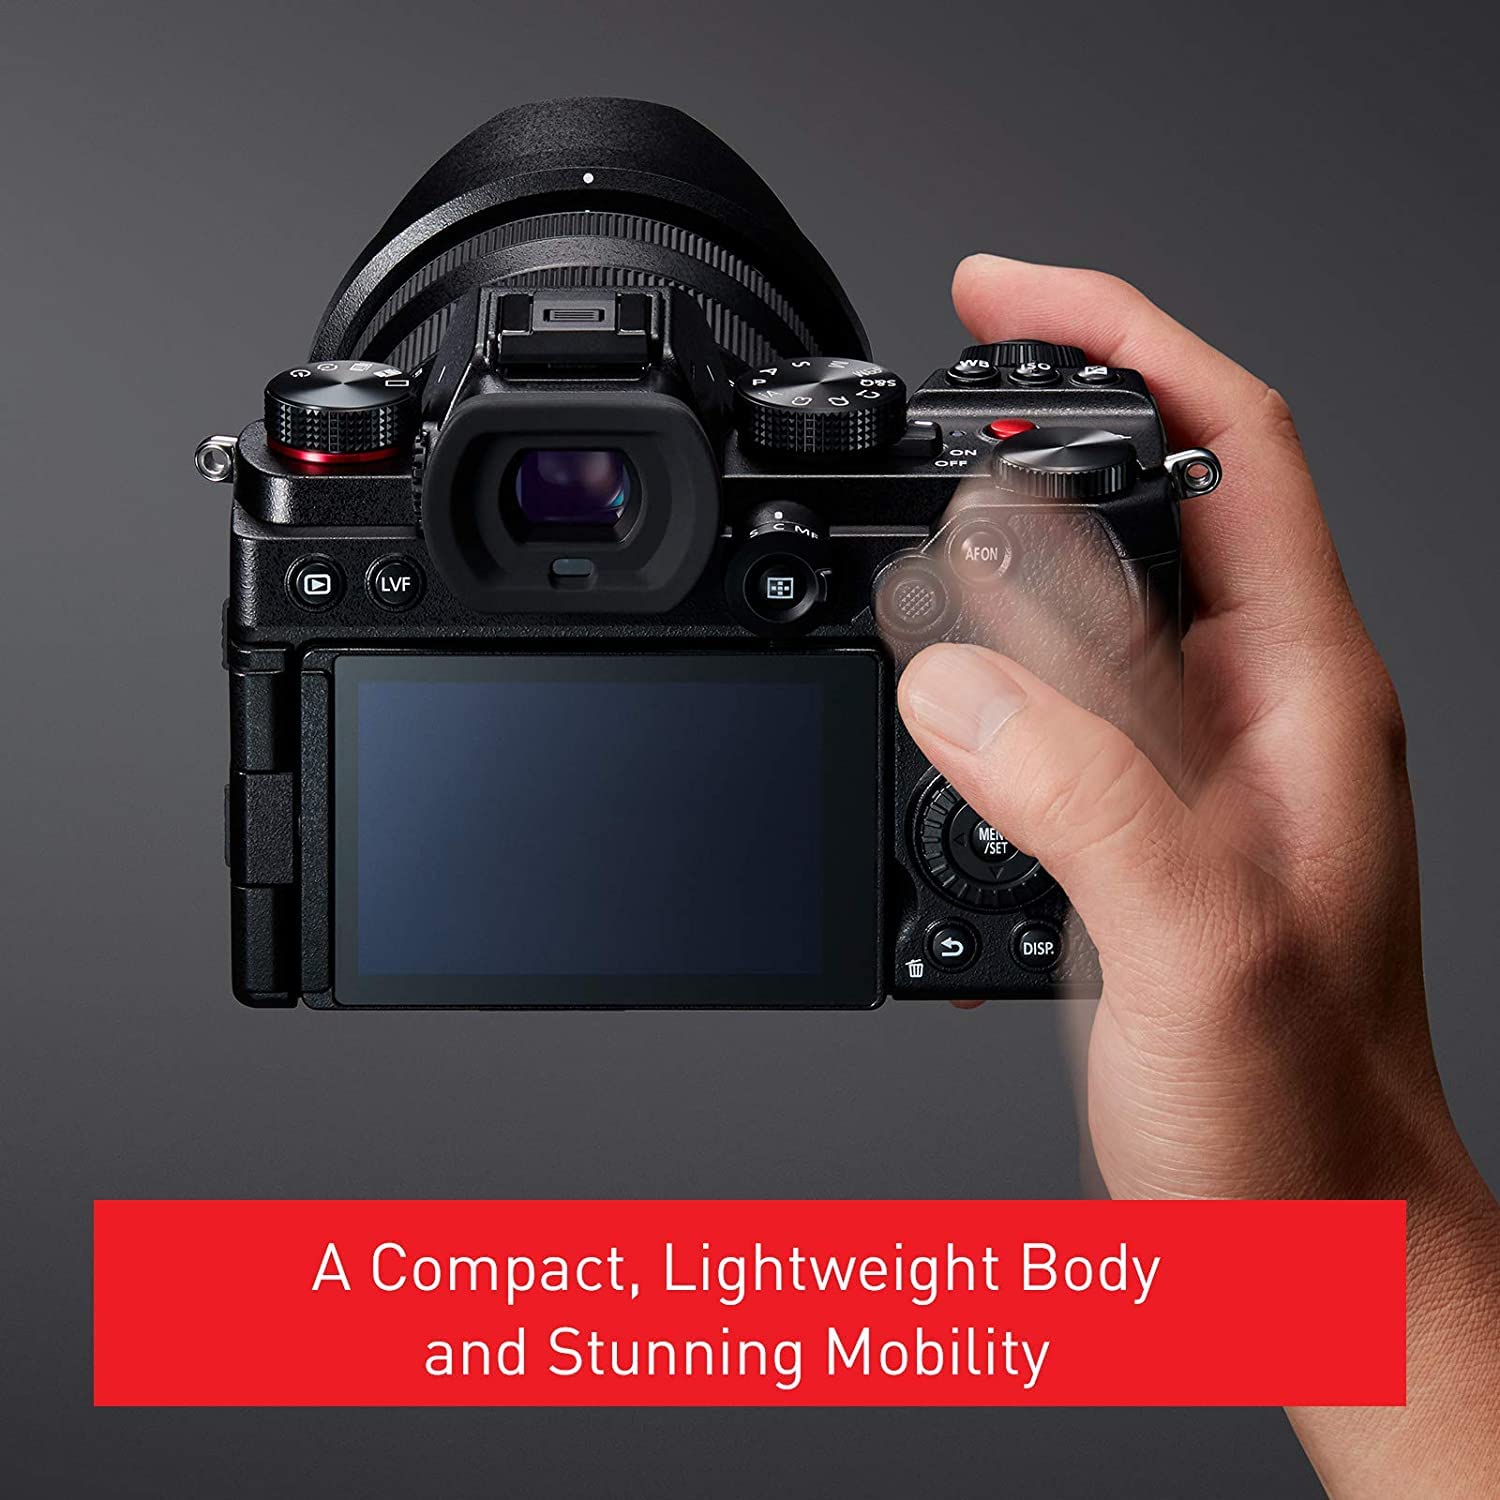 Panasonic LUMIX S5 Full Frame Mirrorless Camera (DC-S5KK) and LUMIX S Pro 16-35mm F4 Wide Zoom Lens (S-R1635)